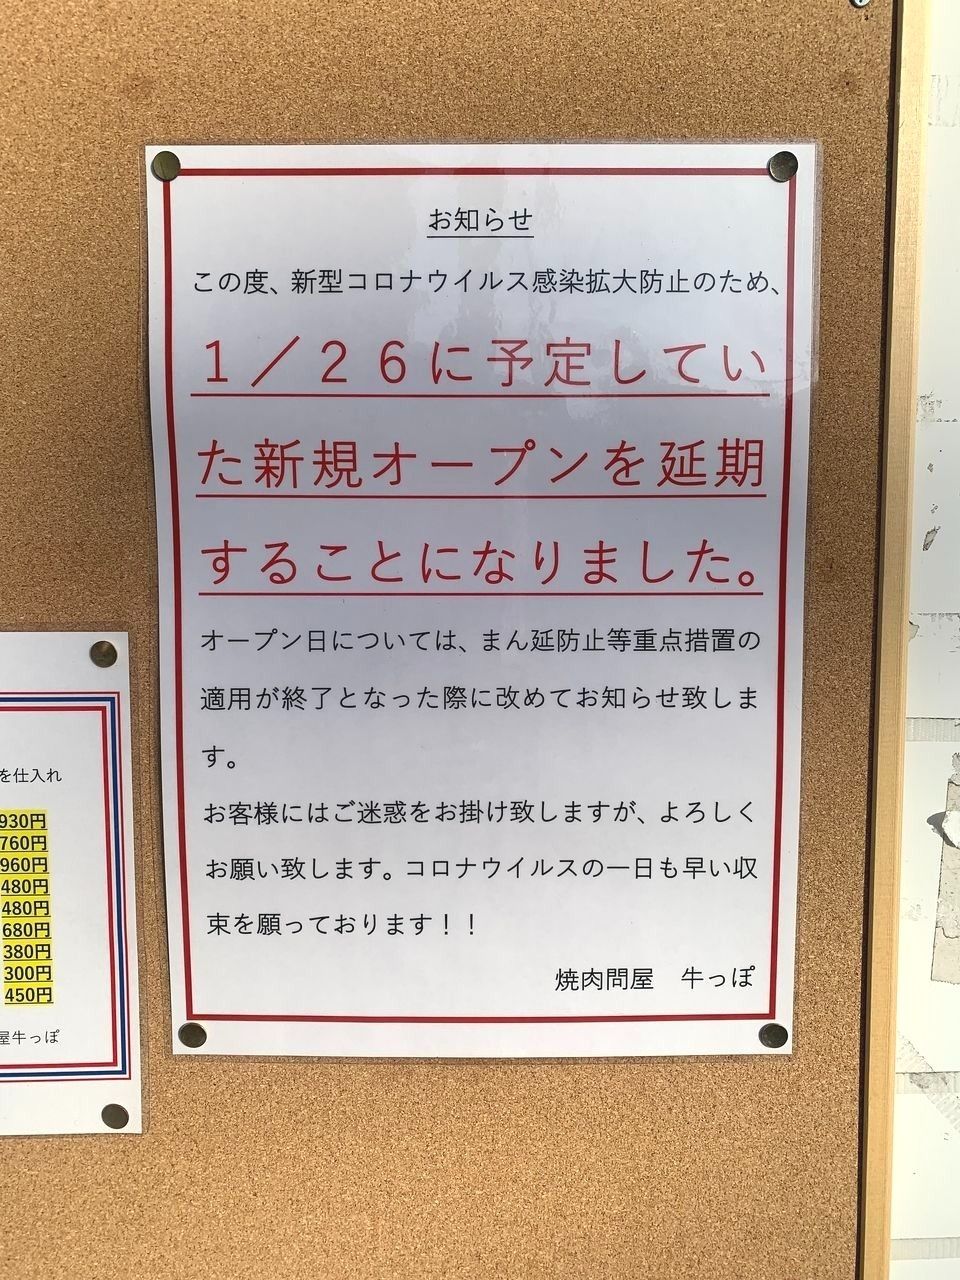 【三郷市食べ歩きブログ】三郷市早稲田2丁目に焼肉問屋「牛っぽ」が1月26日オープンが延期になったようです。